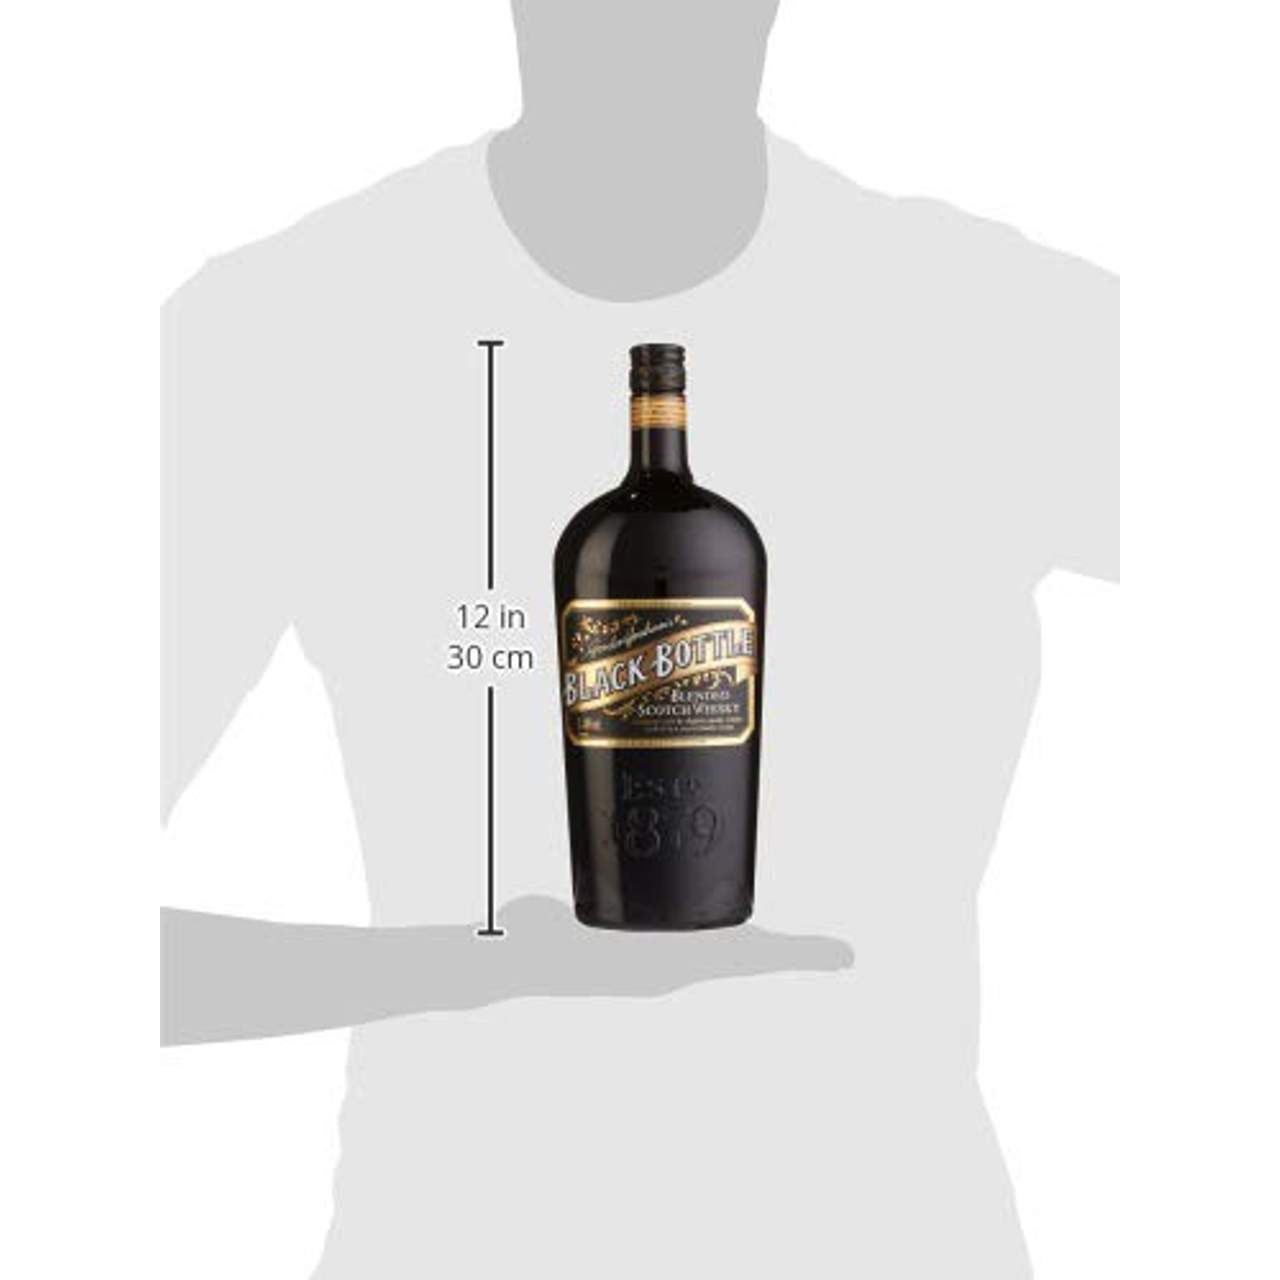 Gordon's Graham's Black Bottle Blended Whisky